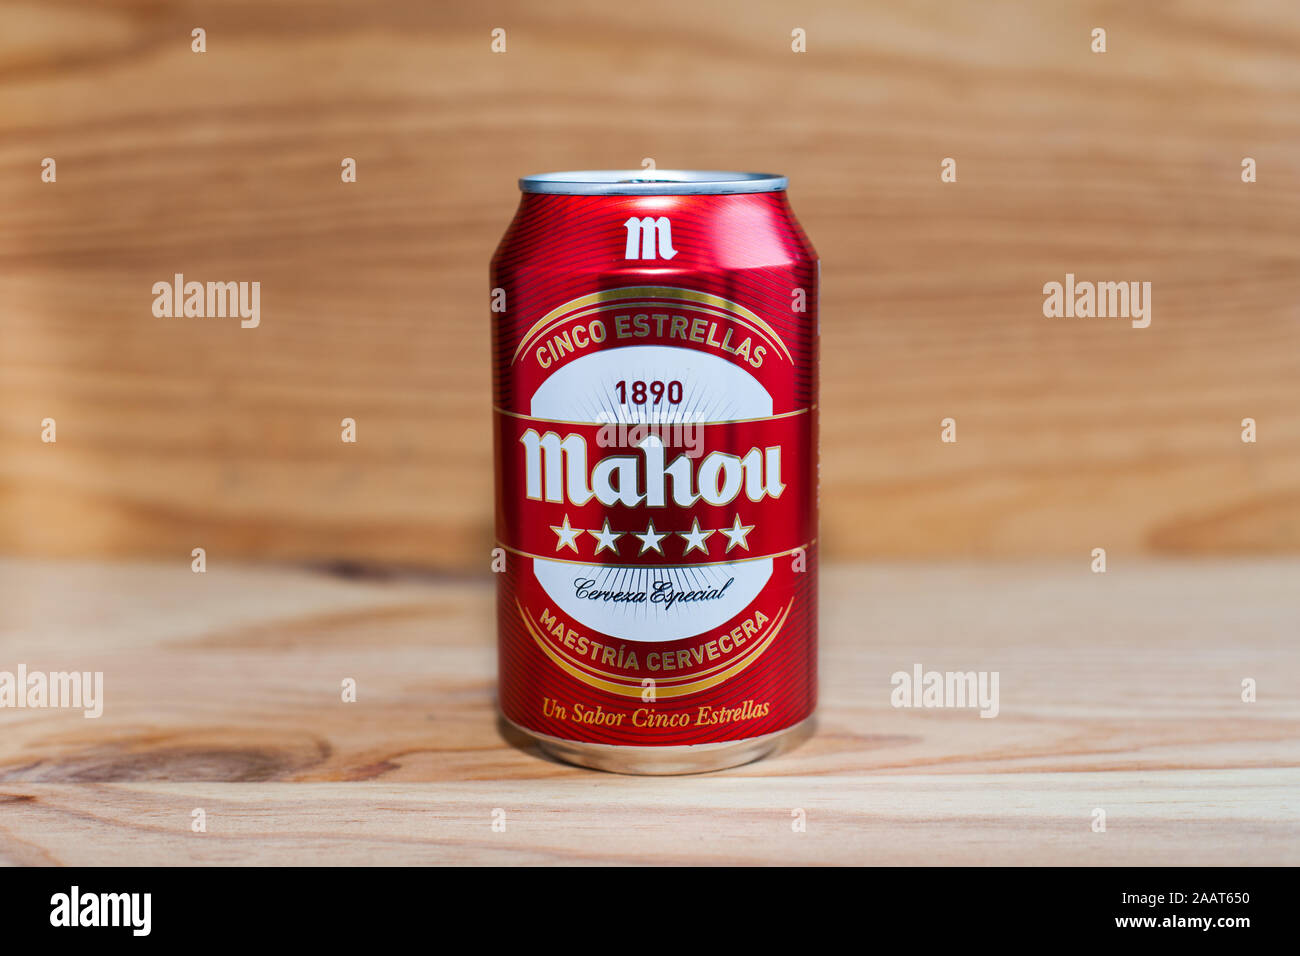 MANISES, VALENCIA, Spagna - 27 gennaio 2019: Può di Mahou birra su legno Foto Stock